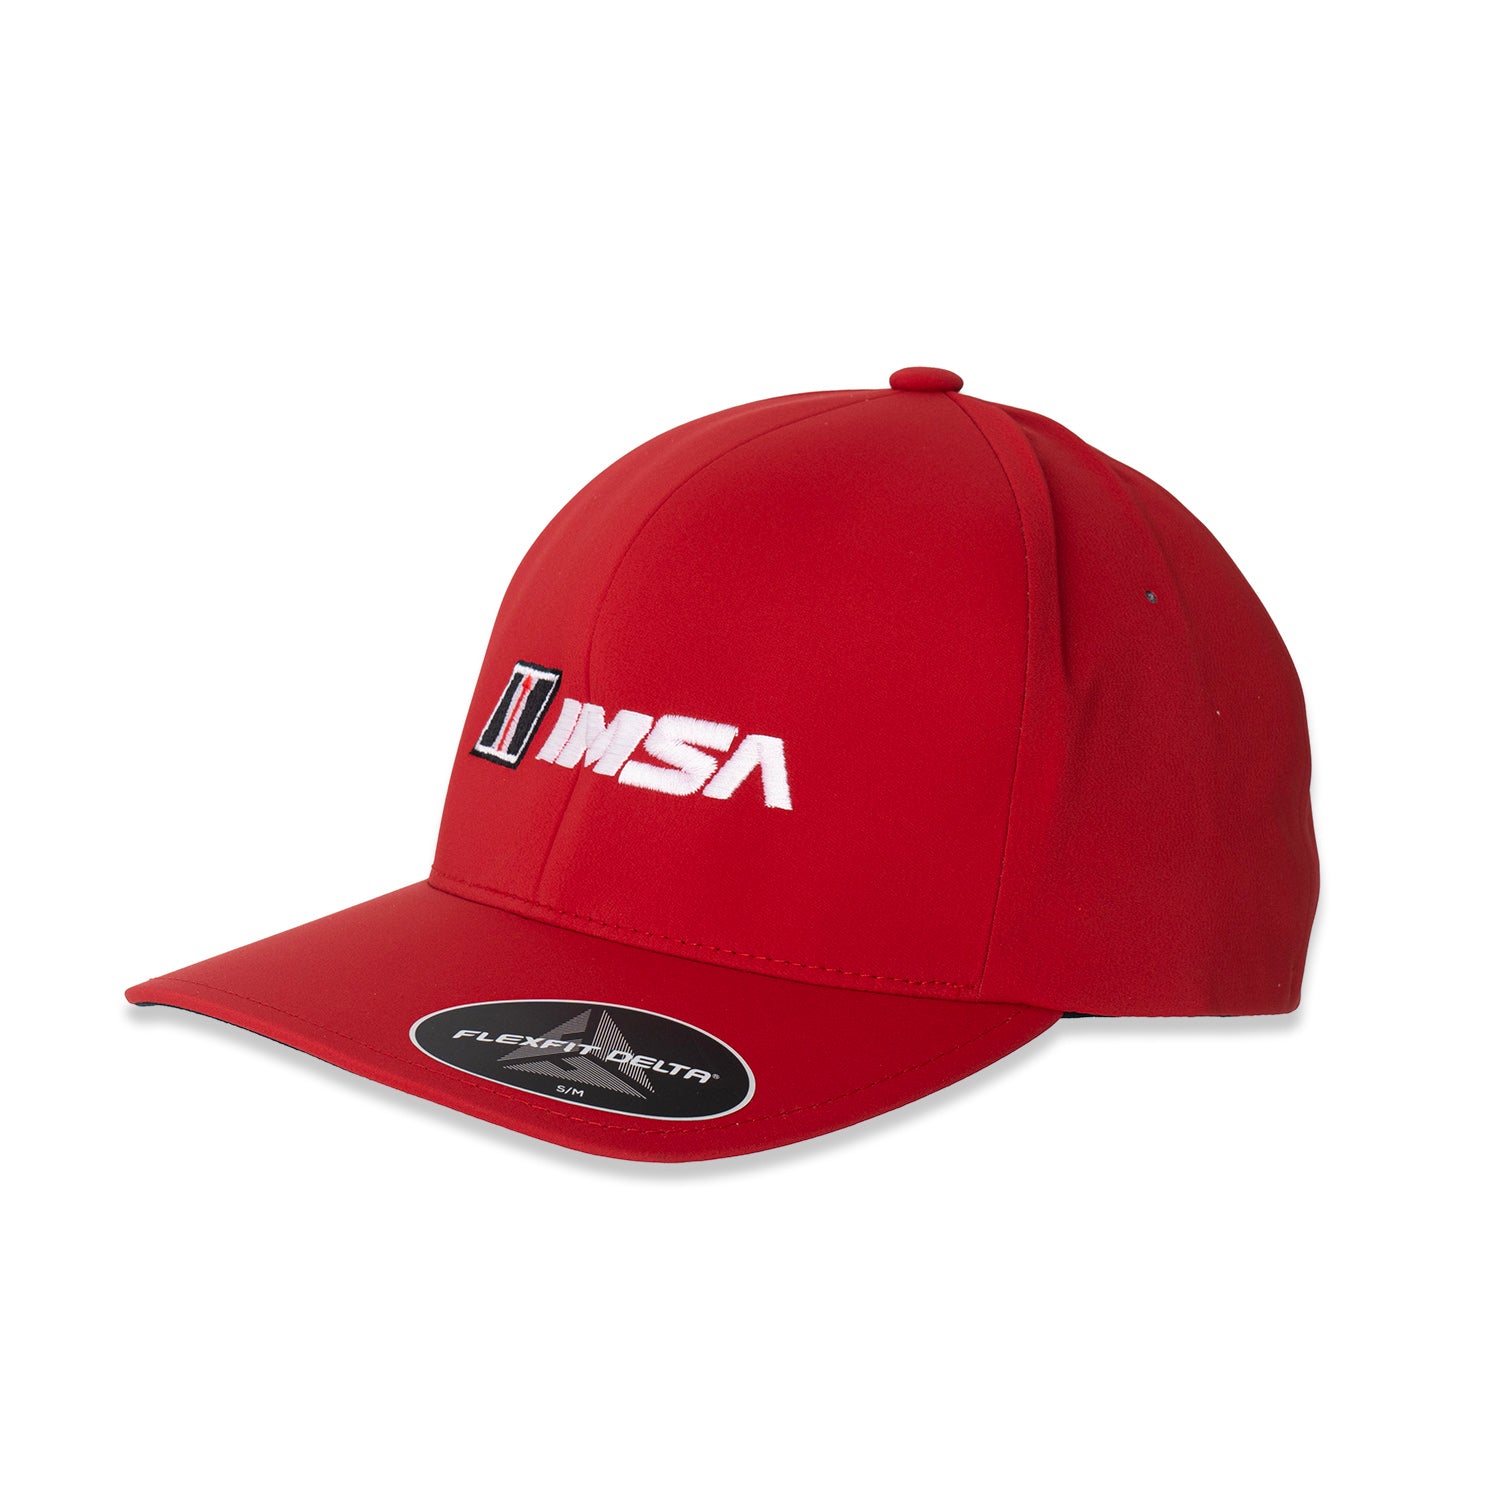 IMSA Flexfit Hat - Red – Team IMSA